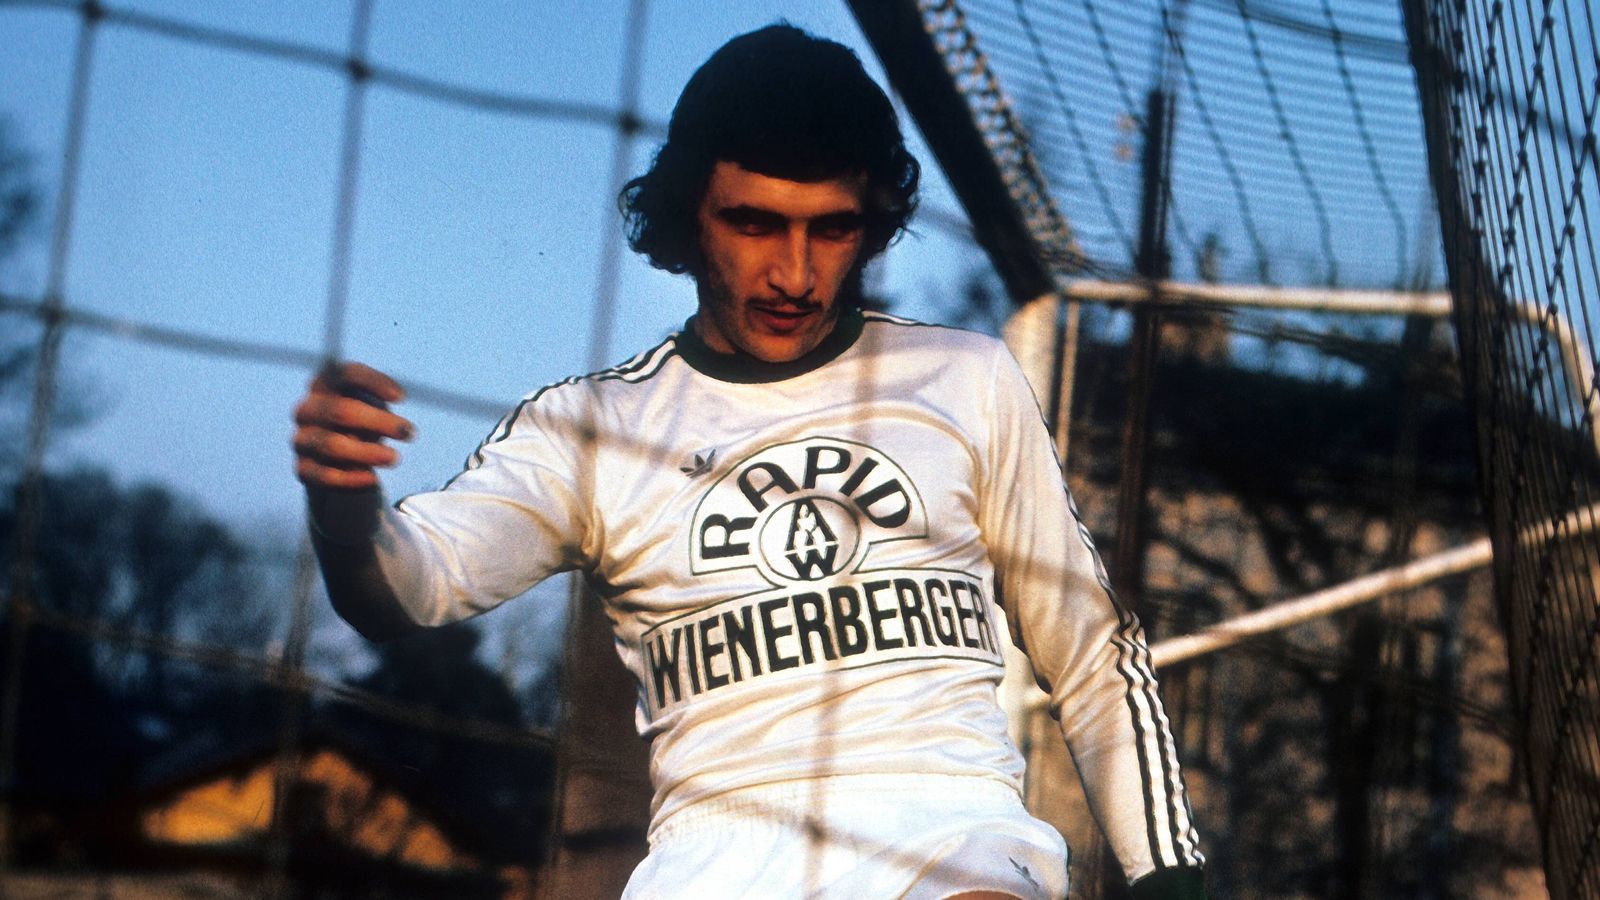 
                <strong>Bundesliga (Österreich)</strong><br>
                Hans Krankl erzielte in der Saison 1977/78 41 Saisontore in der Bundesliga für Rapid Wien. - Auf Platz 2 liegt Marc Janko mit 39 Saisontoren in der Bundesliga in der Spielzeit 2008/09 für Red Bull Salzburg.
              